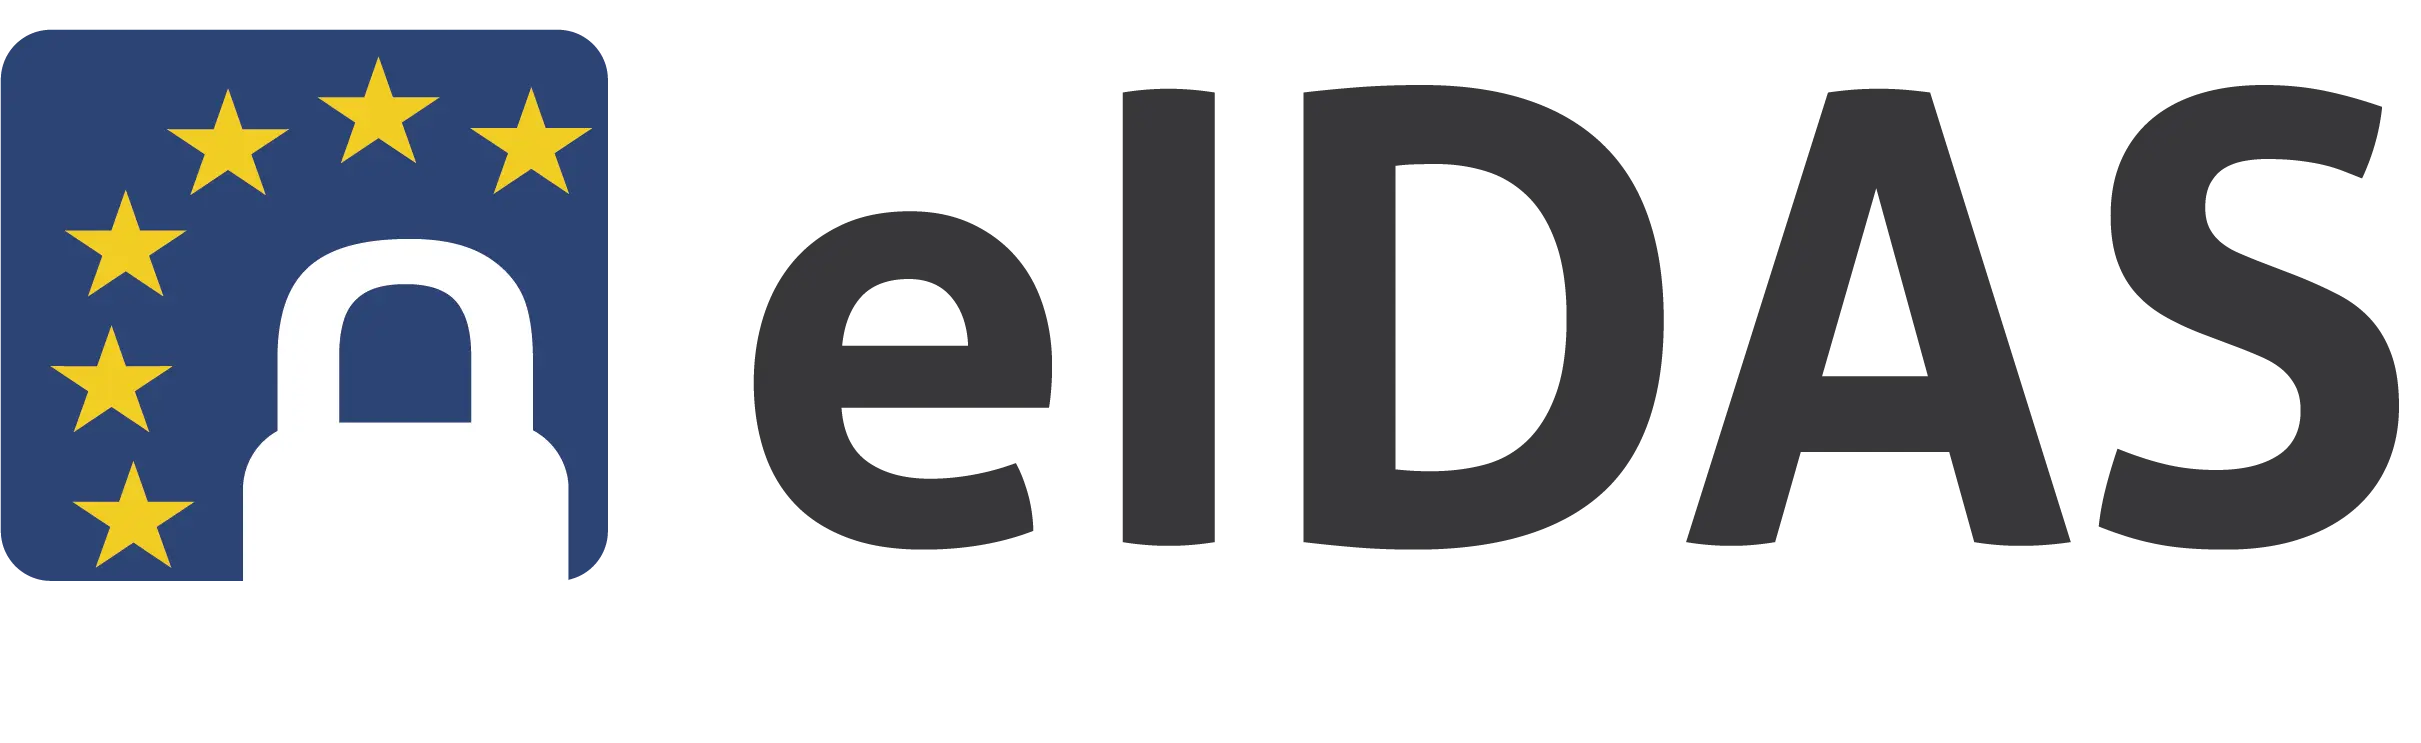 Logo eIDAS